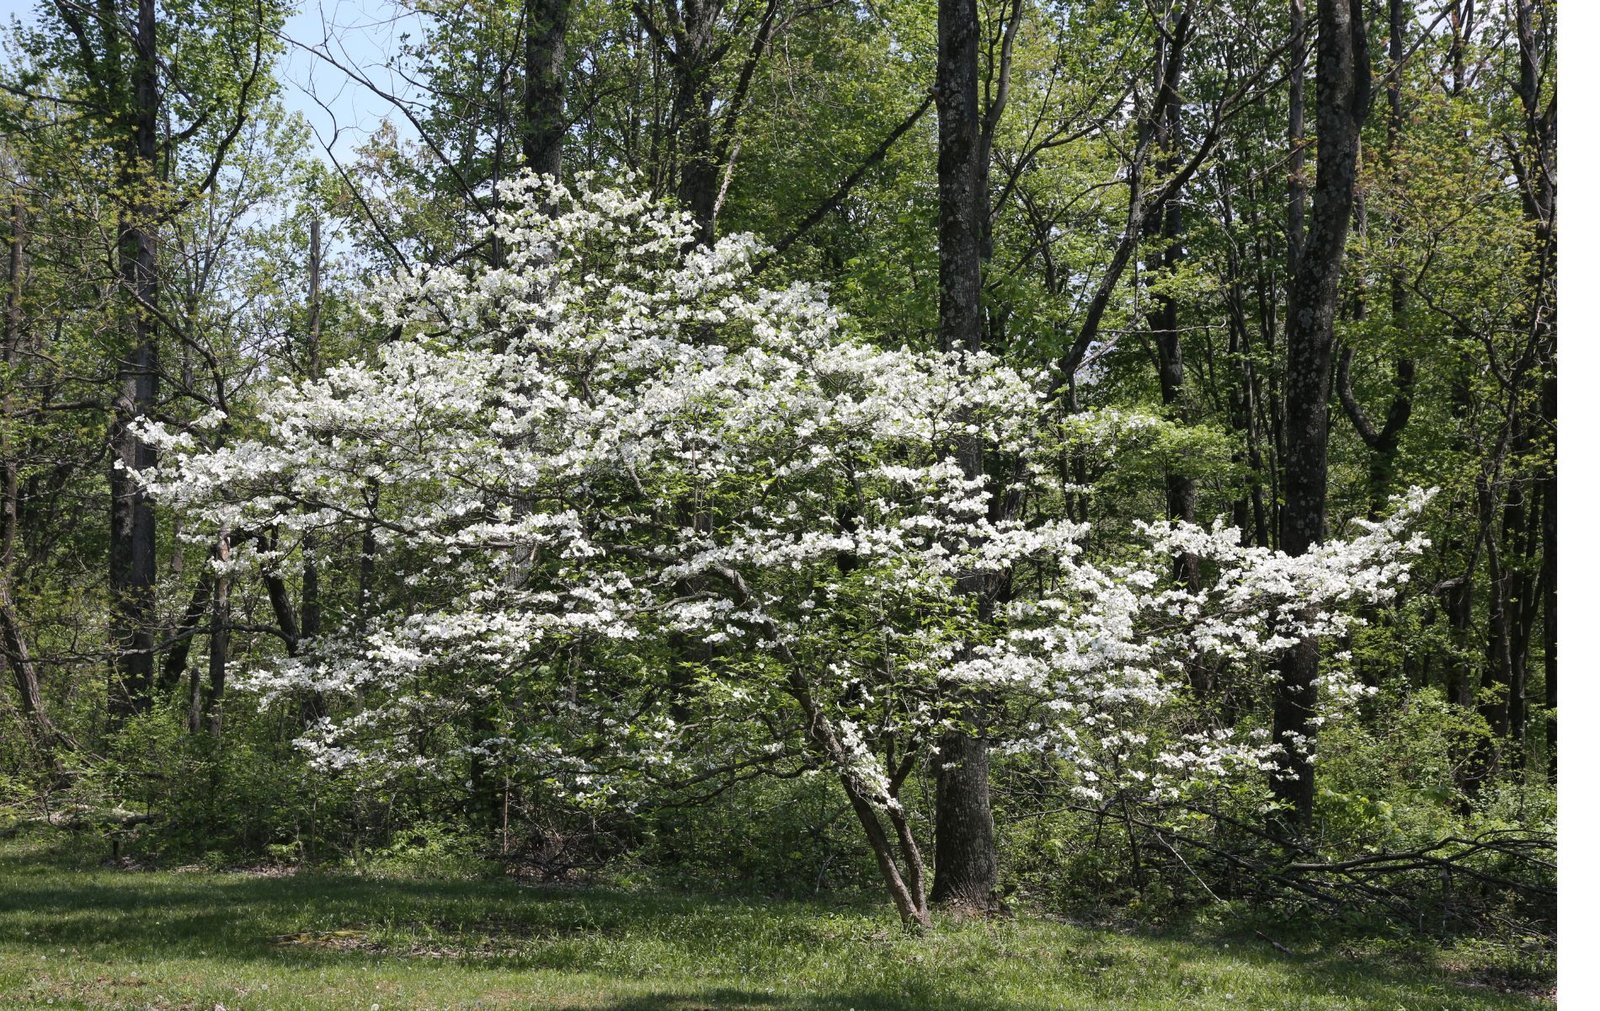 White Dogwood trees